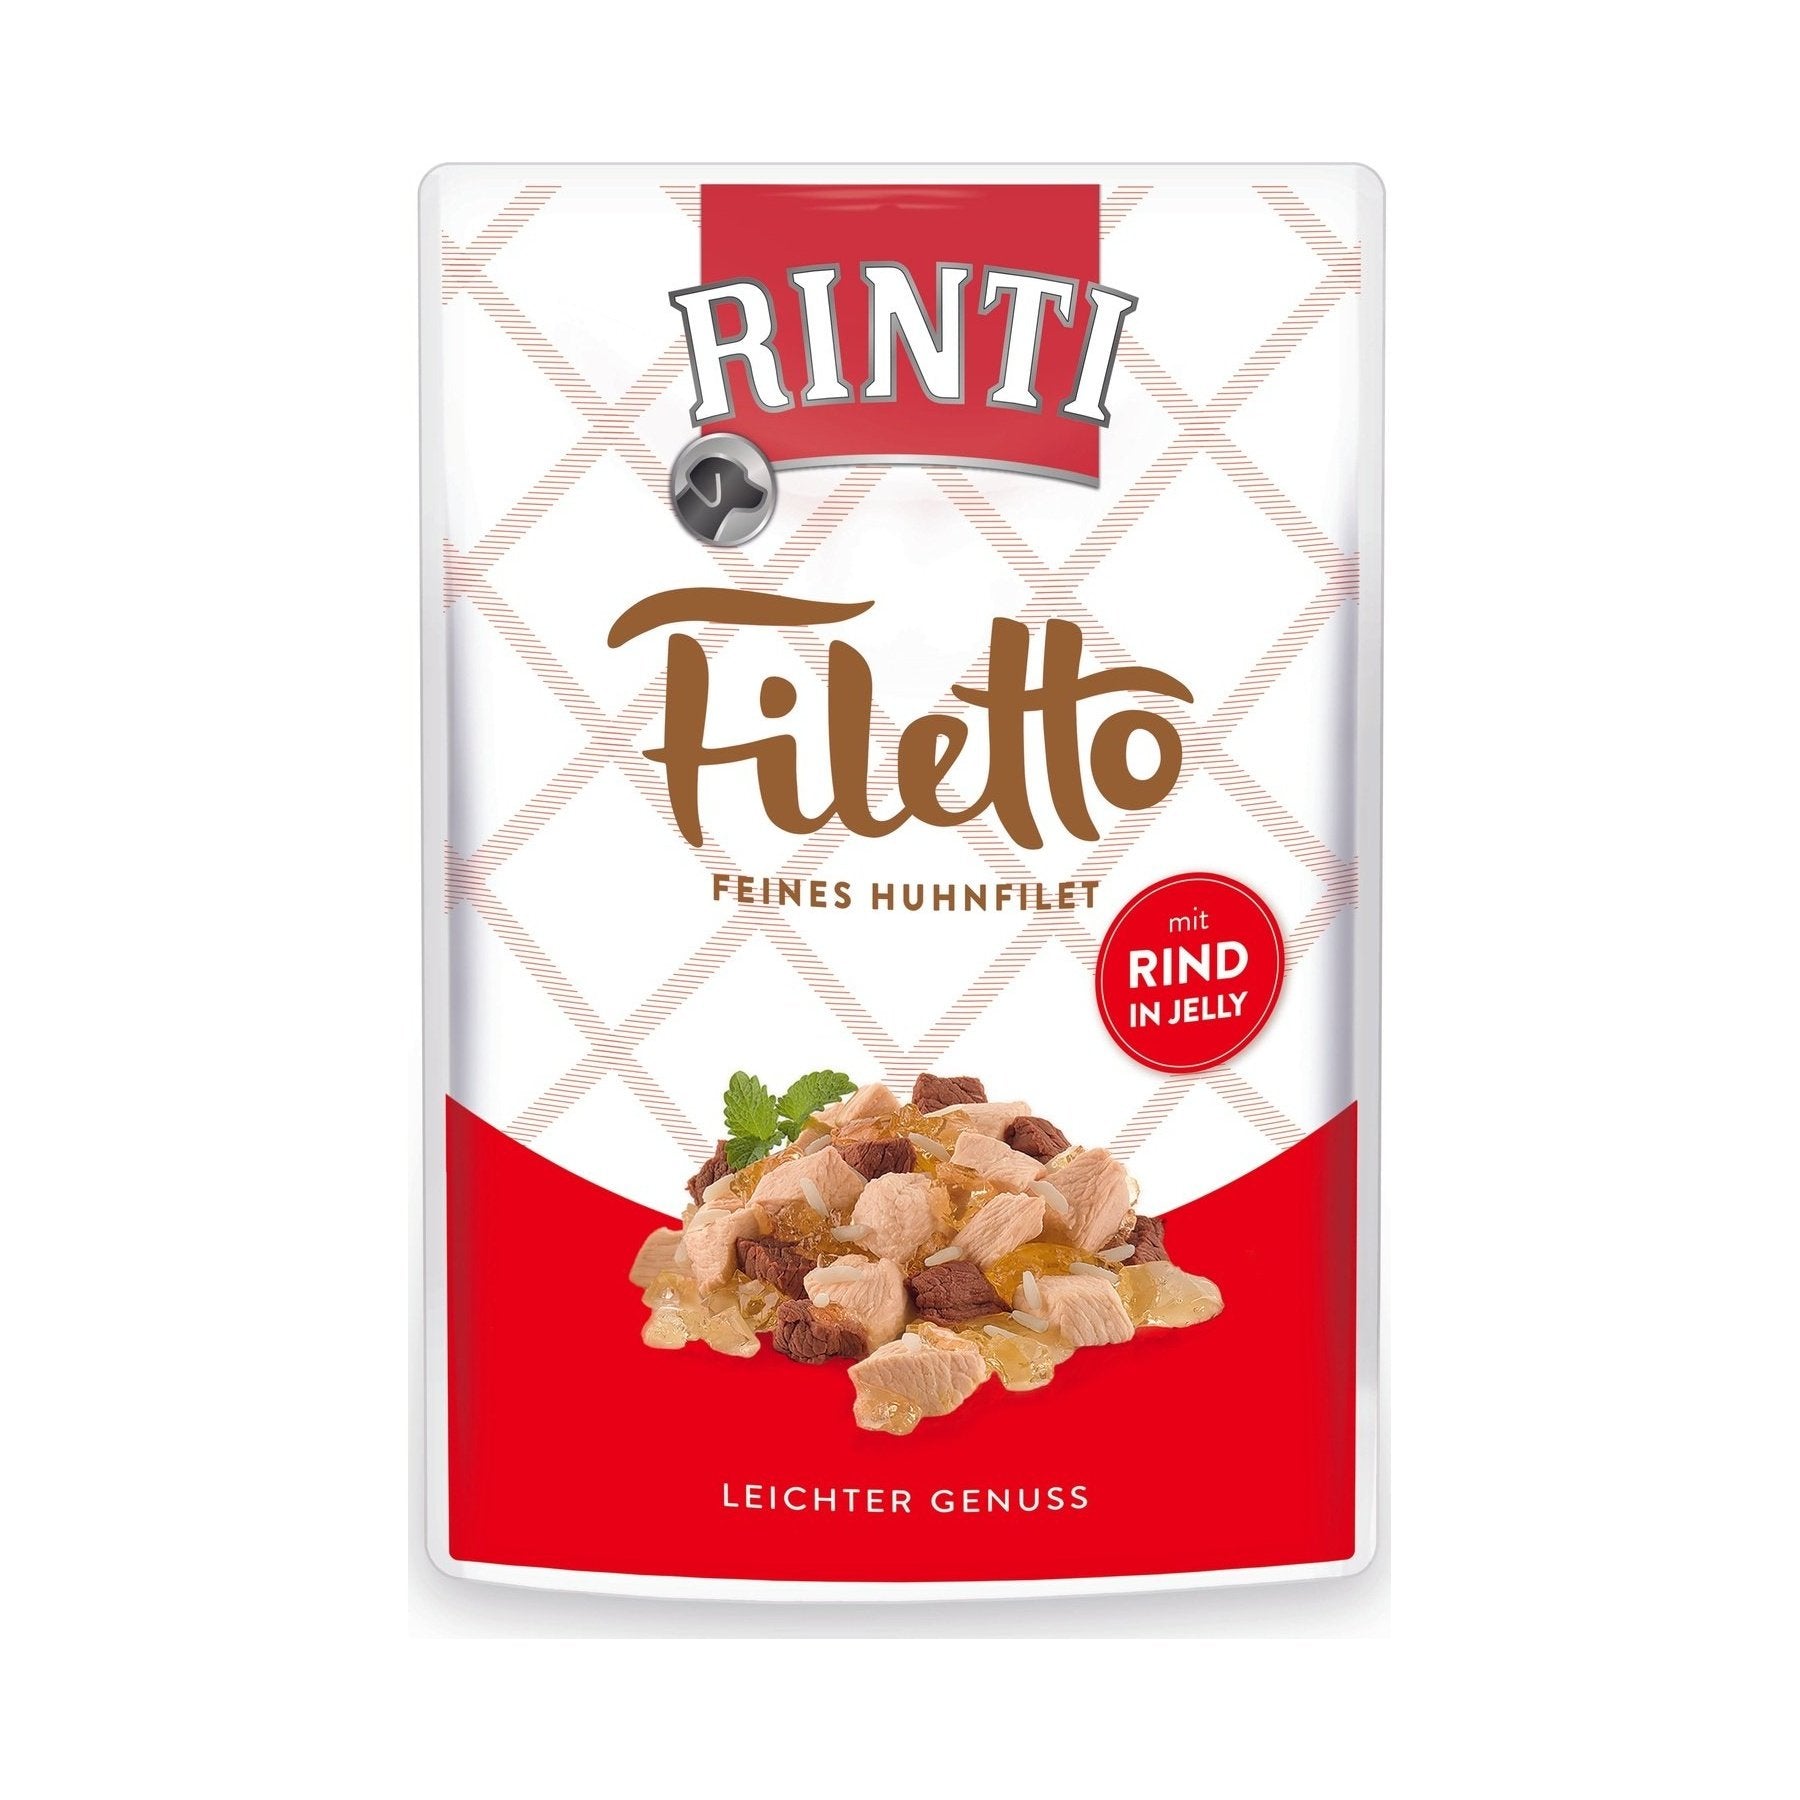 Rinti Filetto Jelly Huhn &amp; Rind - zoo.de